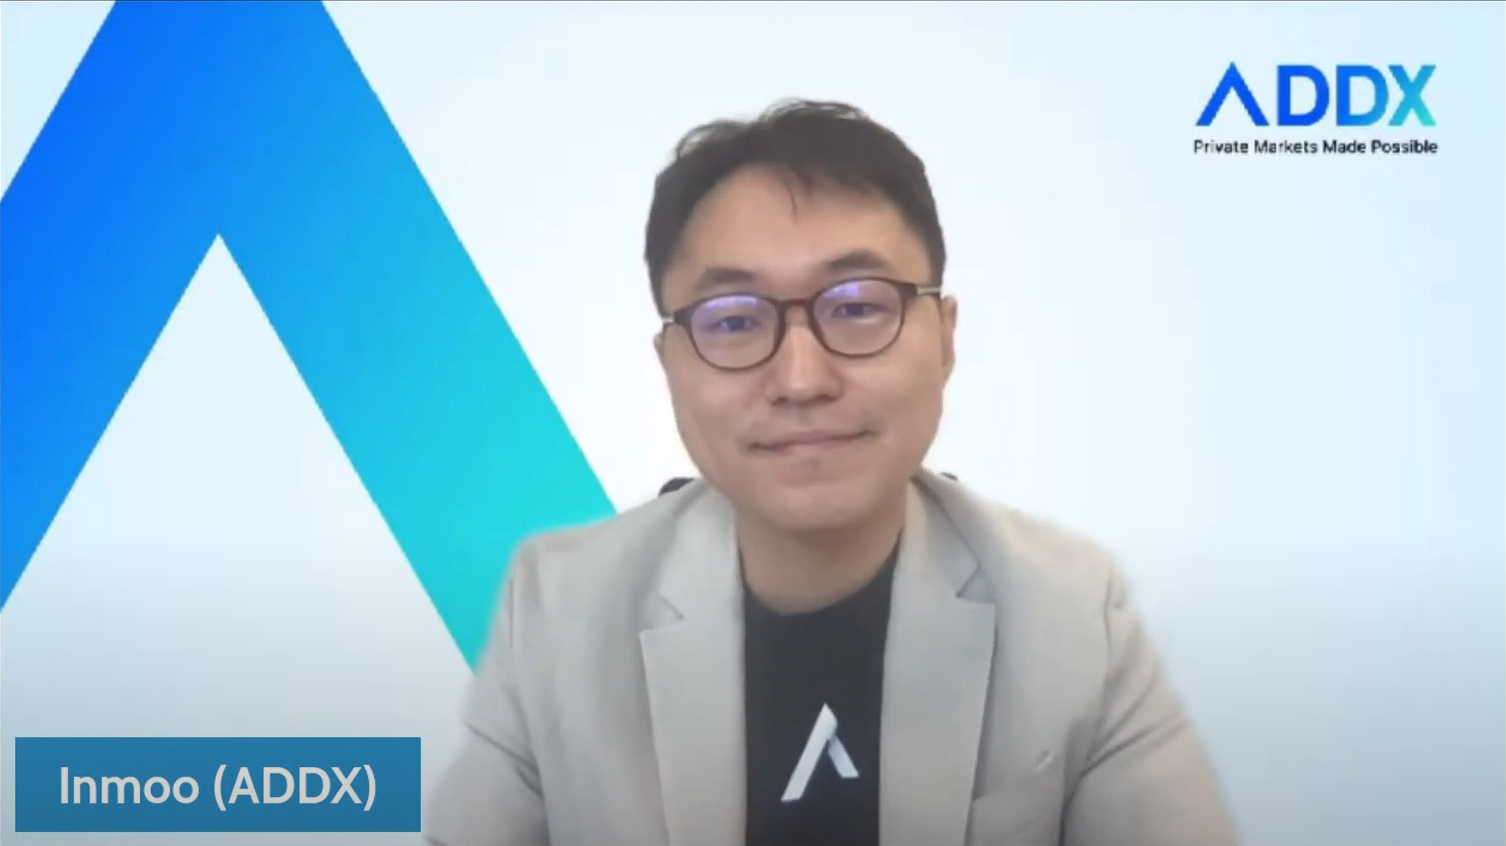 Інмо Хван, головний операційний директор ADDX